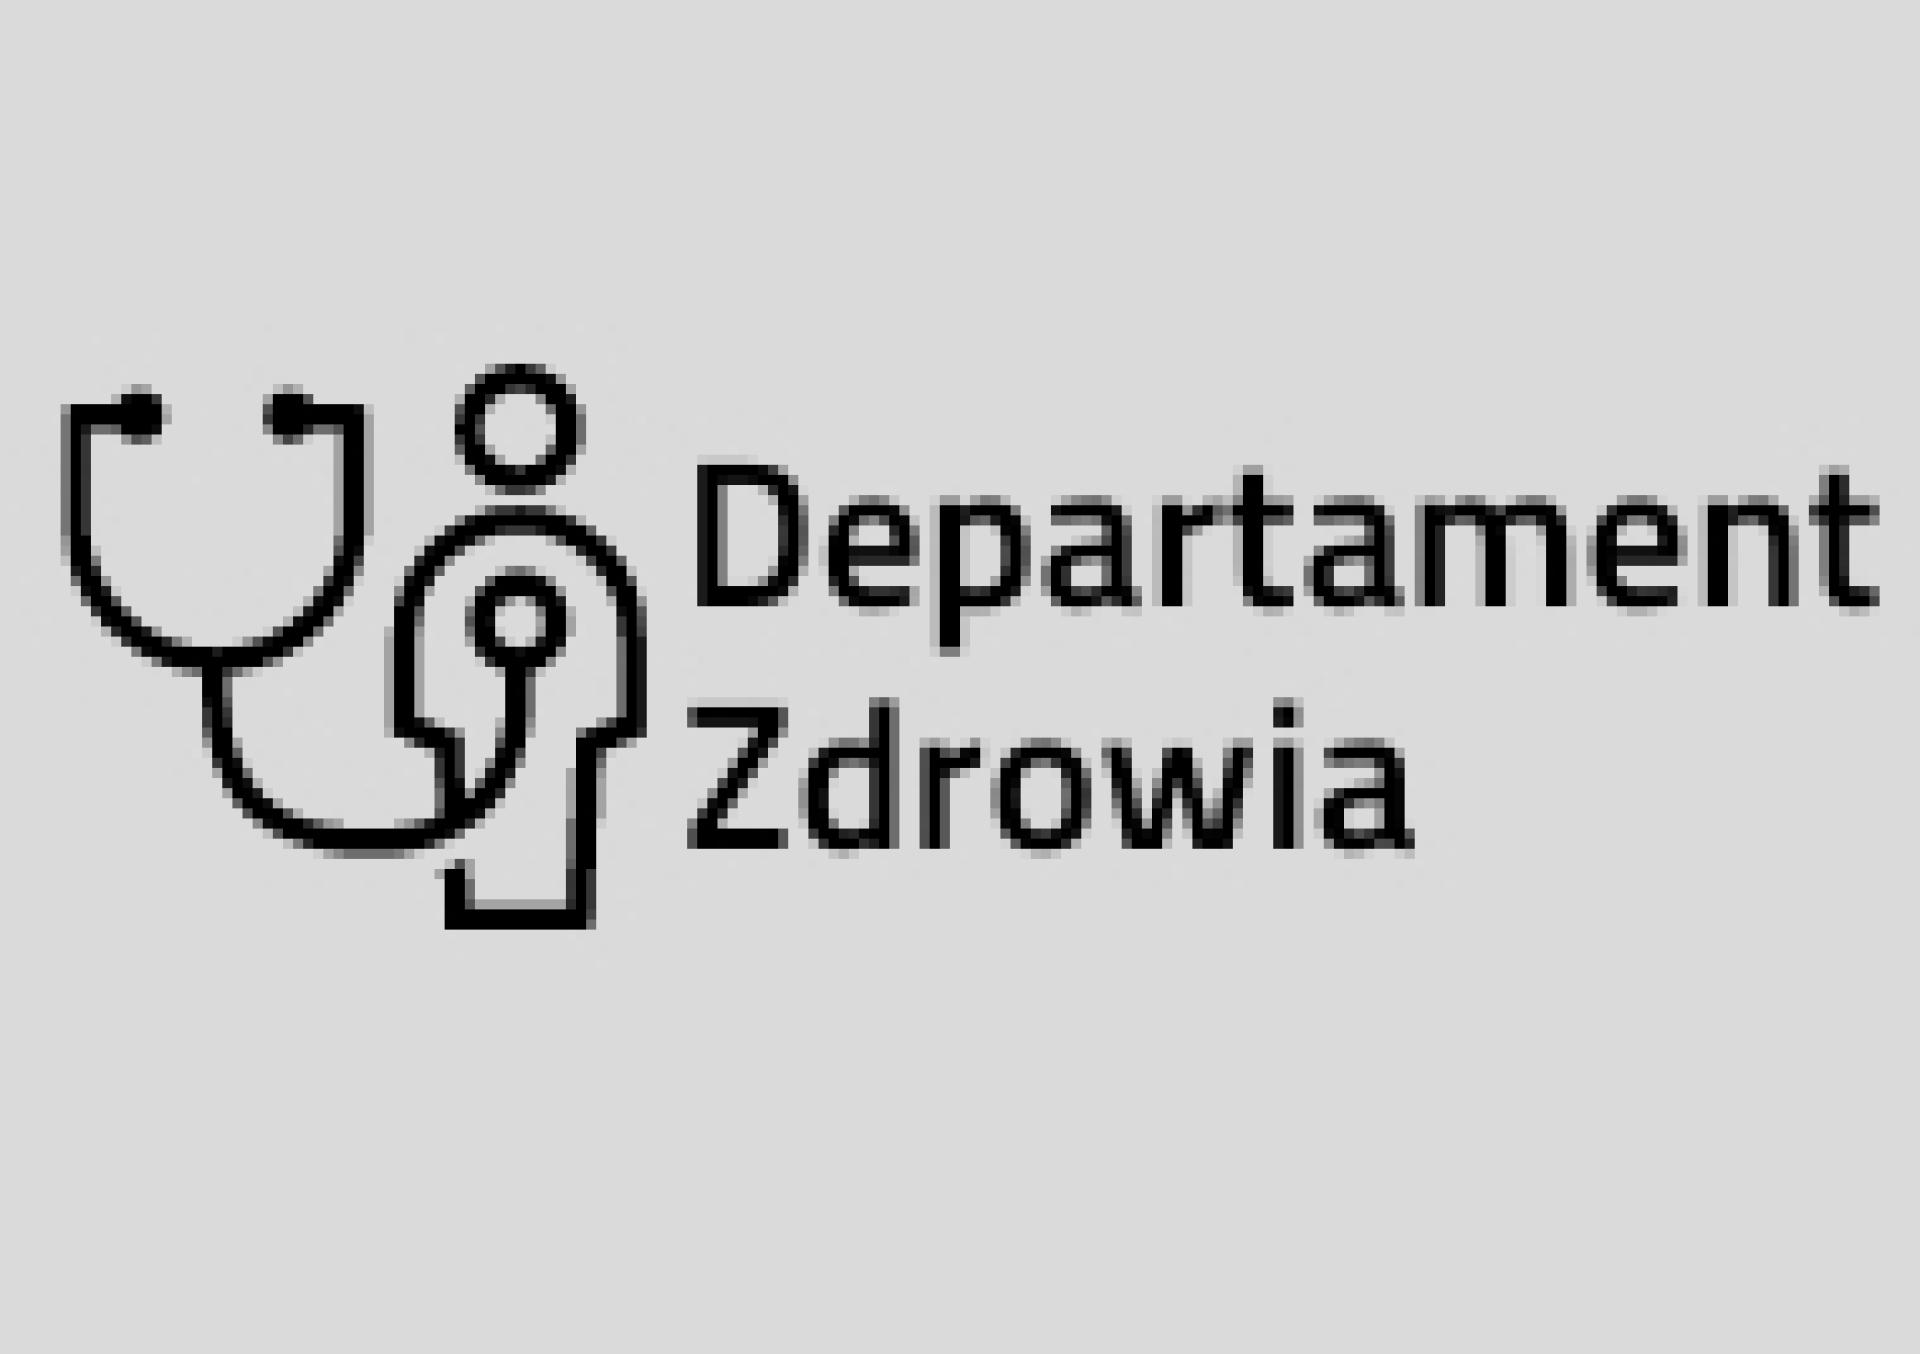 Konsultacje projektu uchwały Sejmiku w sprawie statutu Wielkopolskiego Ośrodka Reumatologicznego w Śremie - zobacz więcej